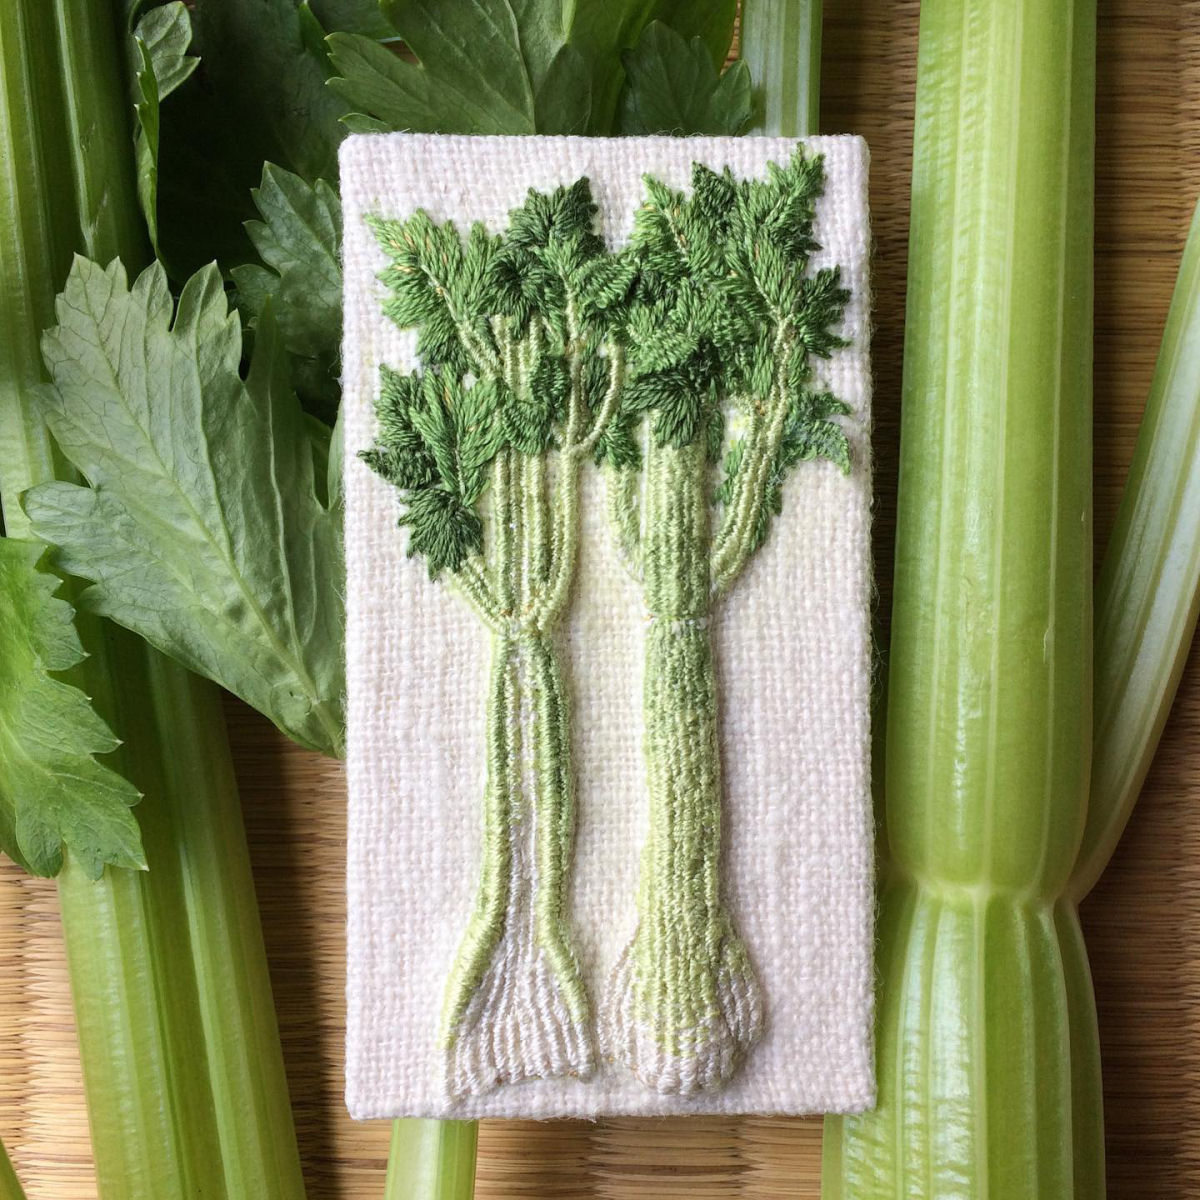 Artista japonesa cultiva verduras e legumes em bordados tridimensionais incrivelmente realistas 12